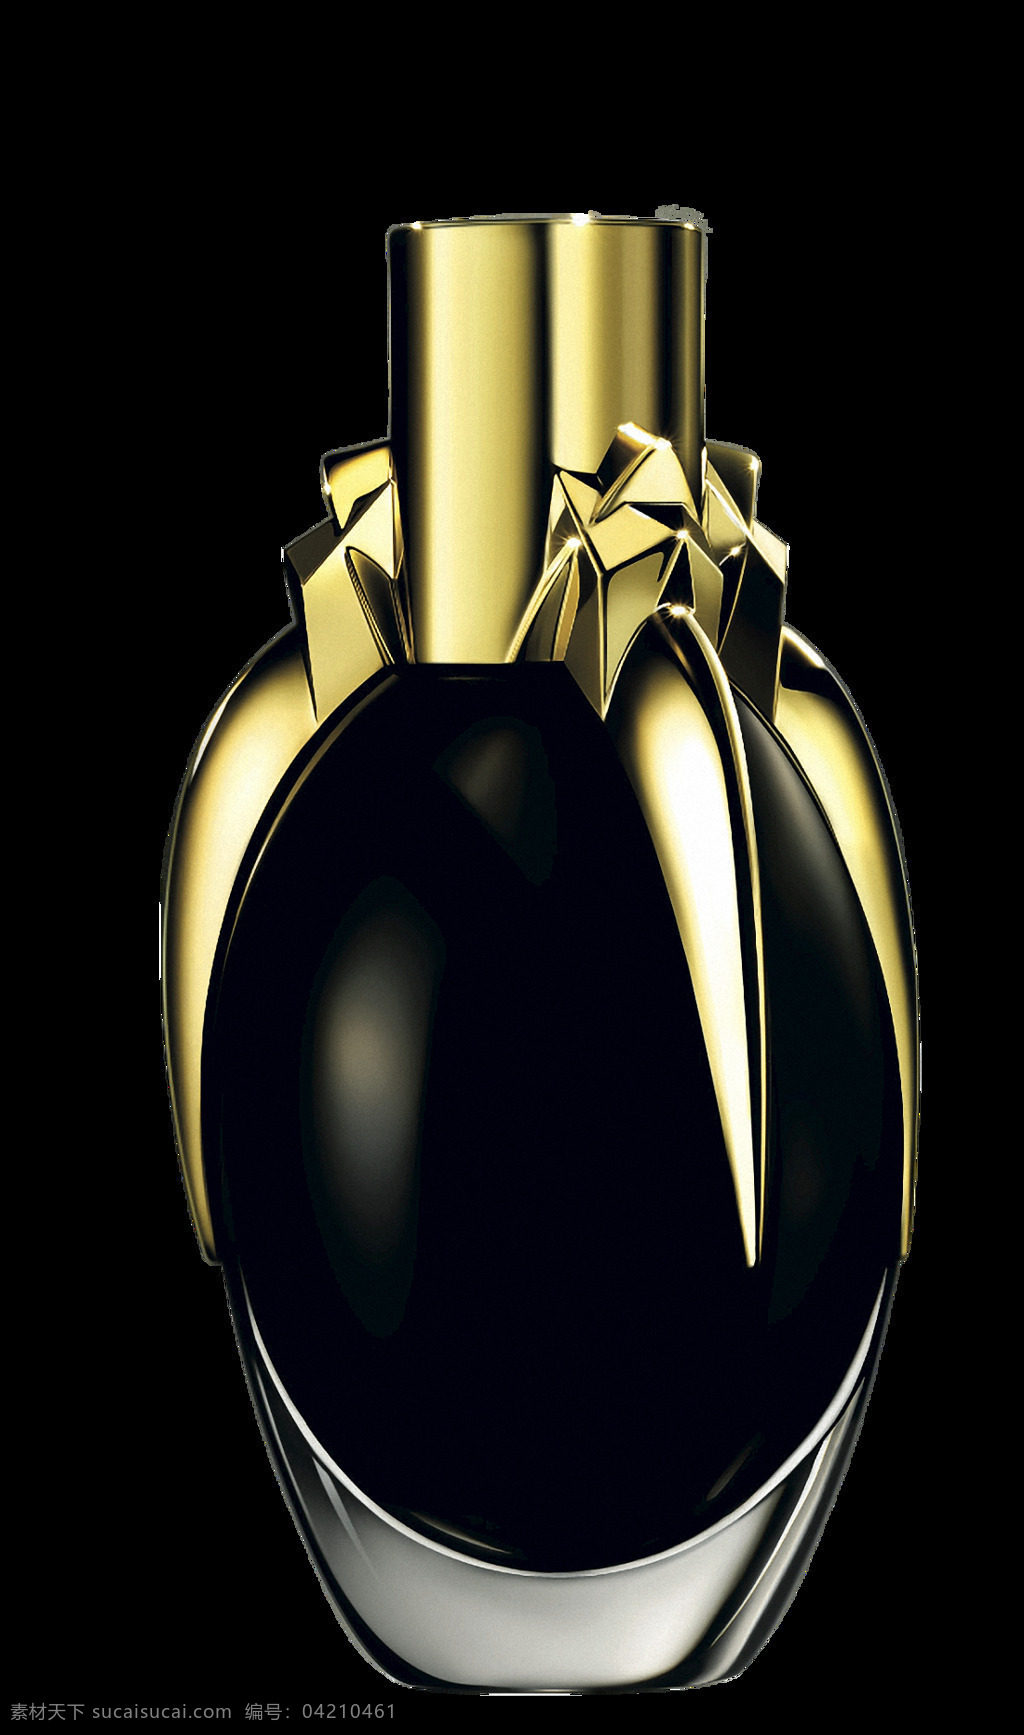 黑色 漂亮 香水 免 抠 透明 黑色漂亮香水 香水创意海报 香水创意广告 香水女人 香奈儿香水 香水素材 香水包装 香水背景图 香水卡通 香水瓶子